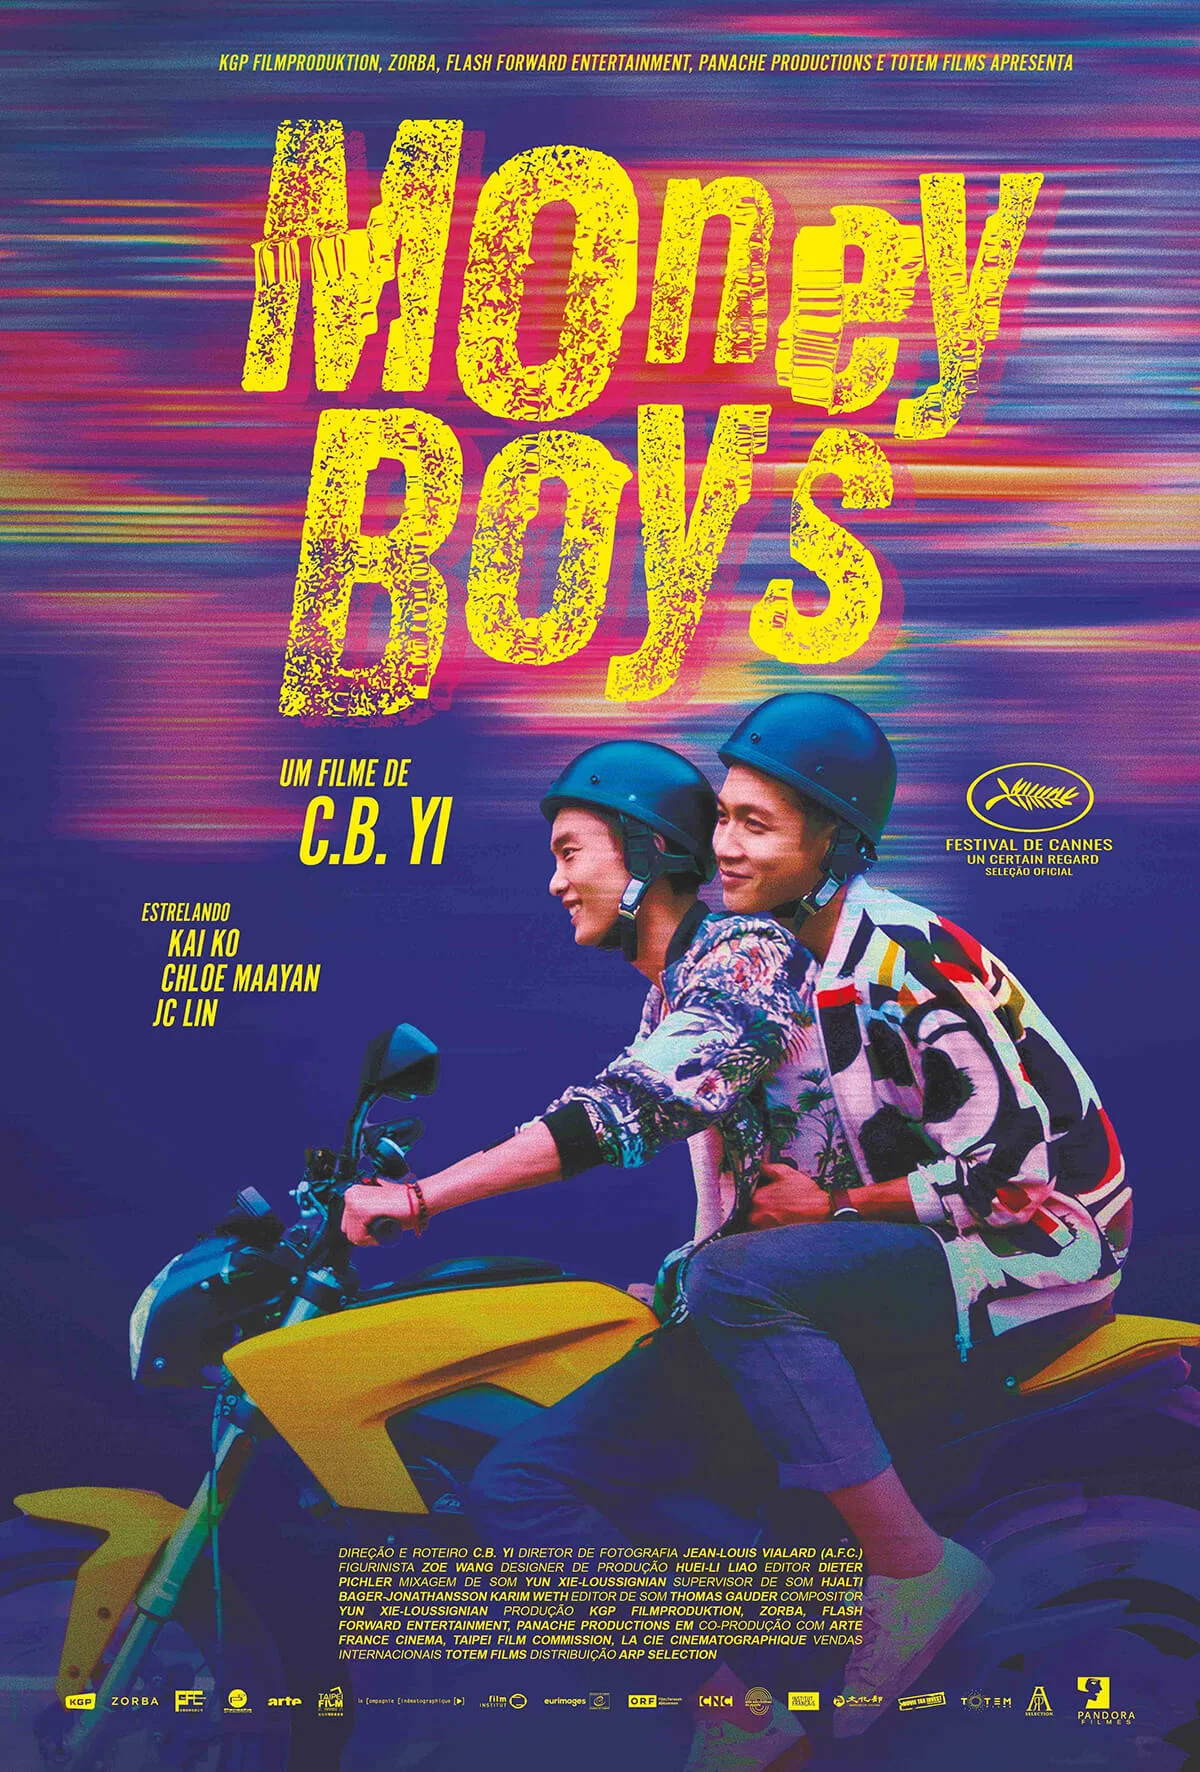 MONEYBOYS, chega aos cinemas brasileiros em 8 de fevereiro de 2024 pela Pandora Filmes, evocando as experiências do roteirista C.B. Yi.